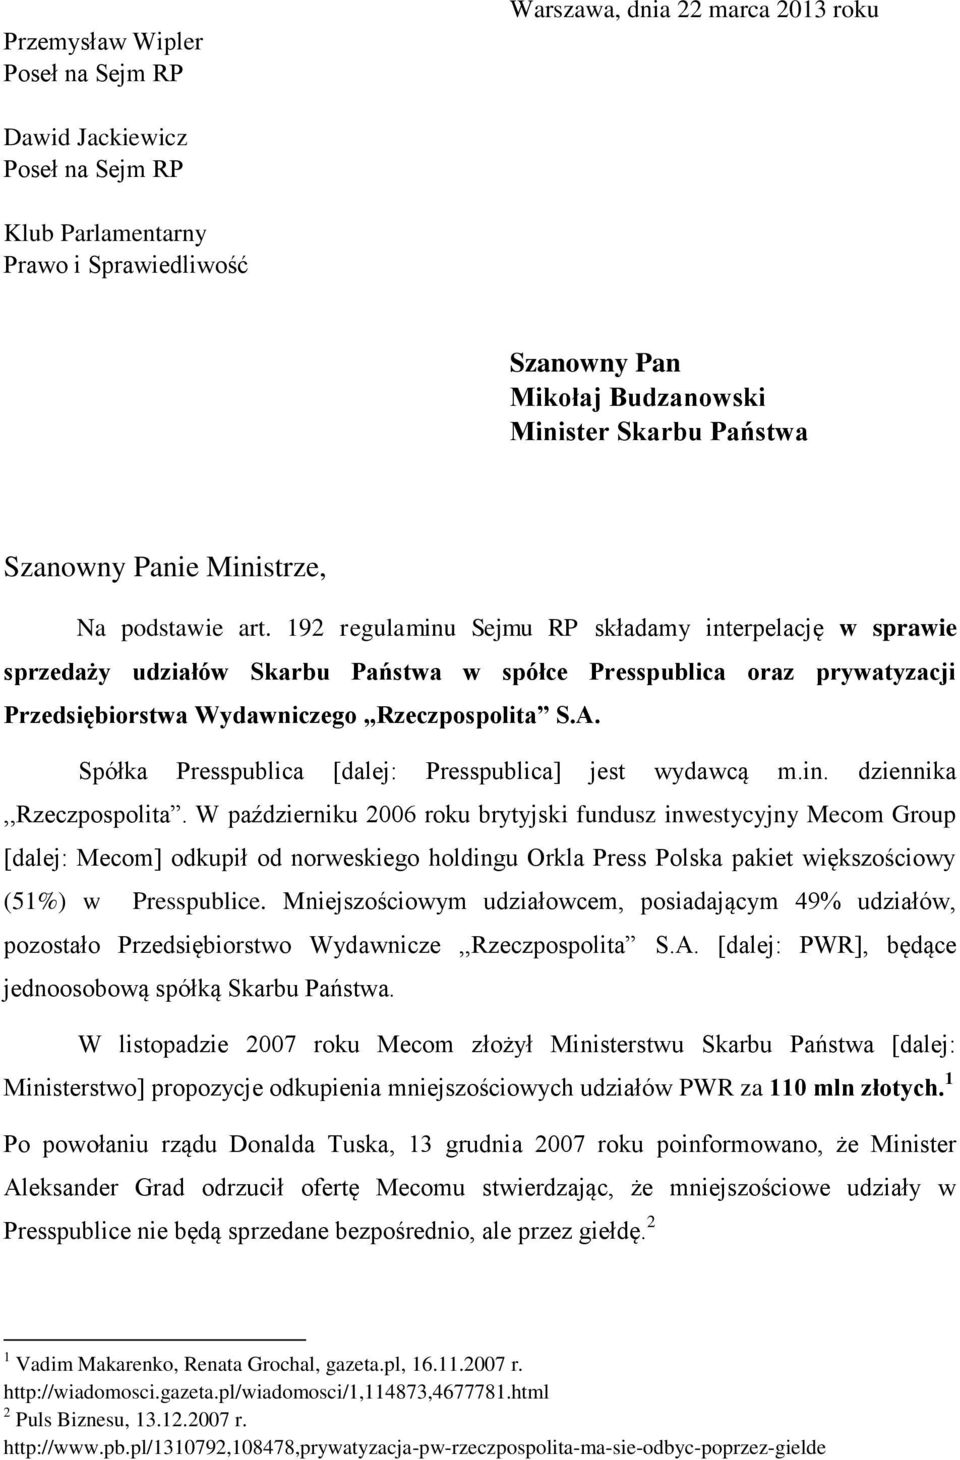 192 regulaminu Sejmu RP składamy interpelację w sprawie sprzedaży udziałów Skarbu Państwa w spółce Presspublica oraz prywatyzacji Przedsiębiorstwa Wydawniczego,,Rzeczpospolita S.A.